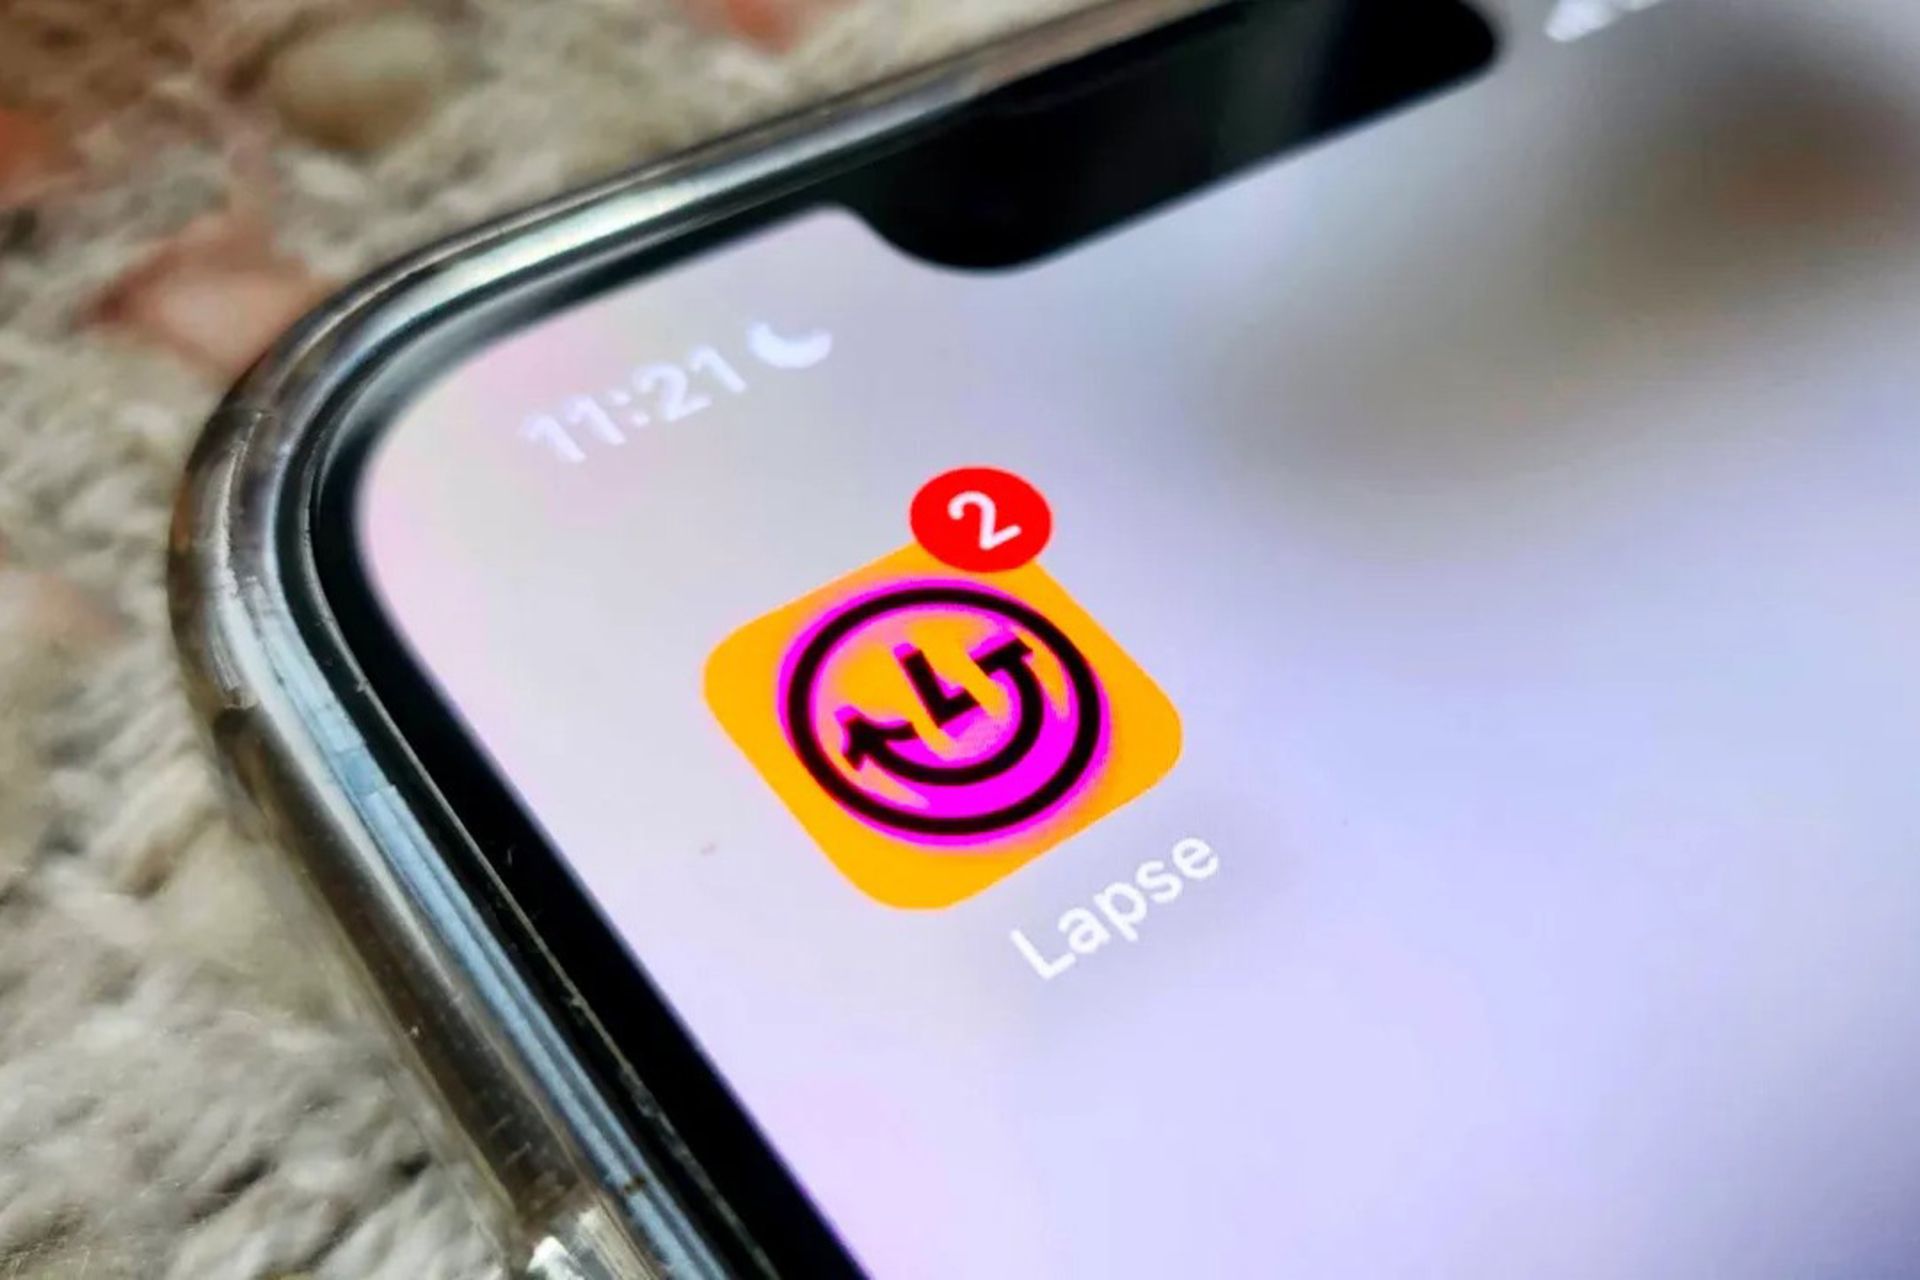 لوگوی اپلیکیشن lapse روی صفحه روشن یک گوشی با دو نوتیفیکیشن